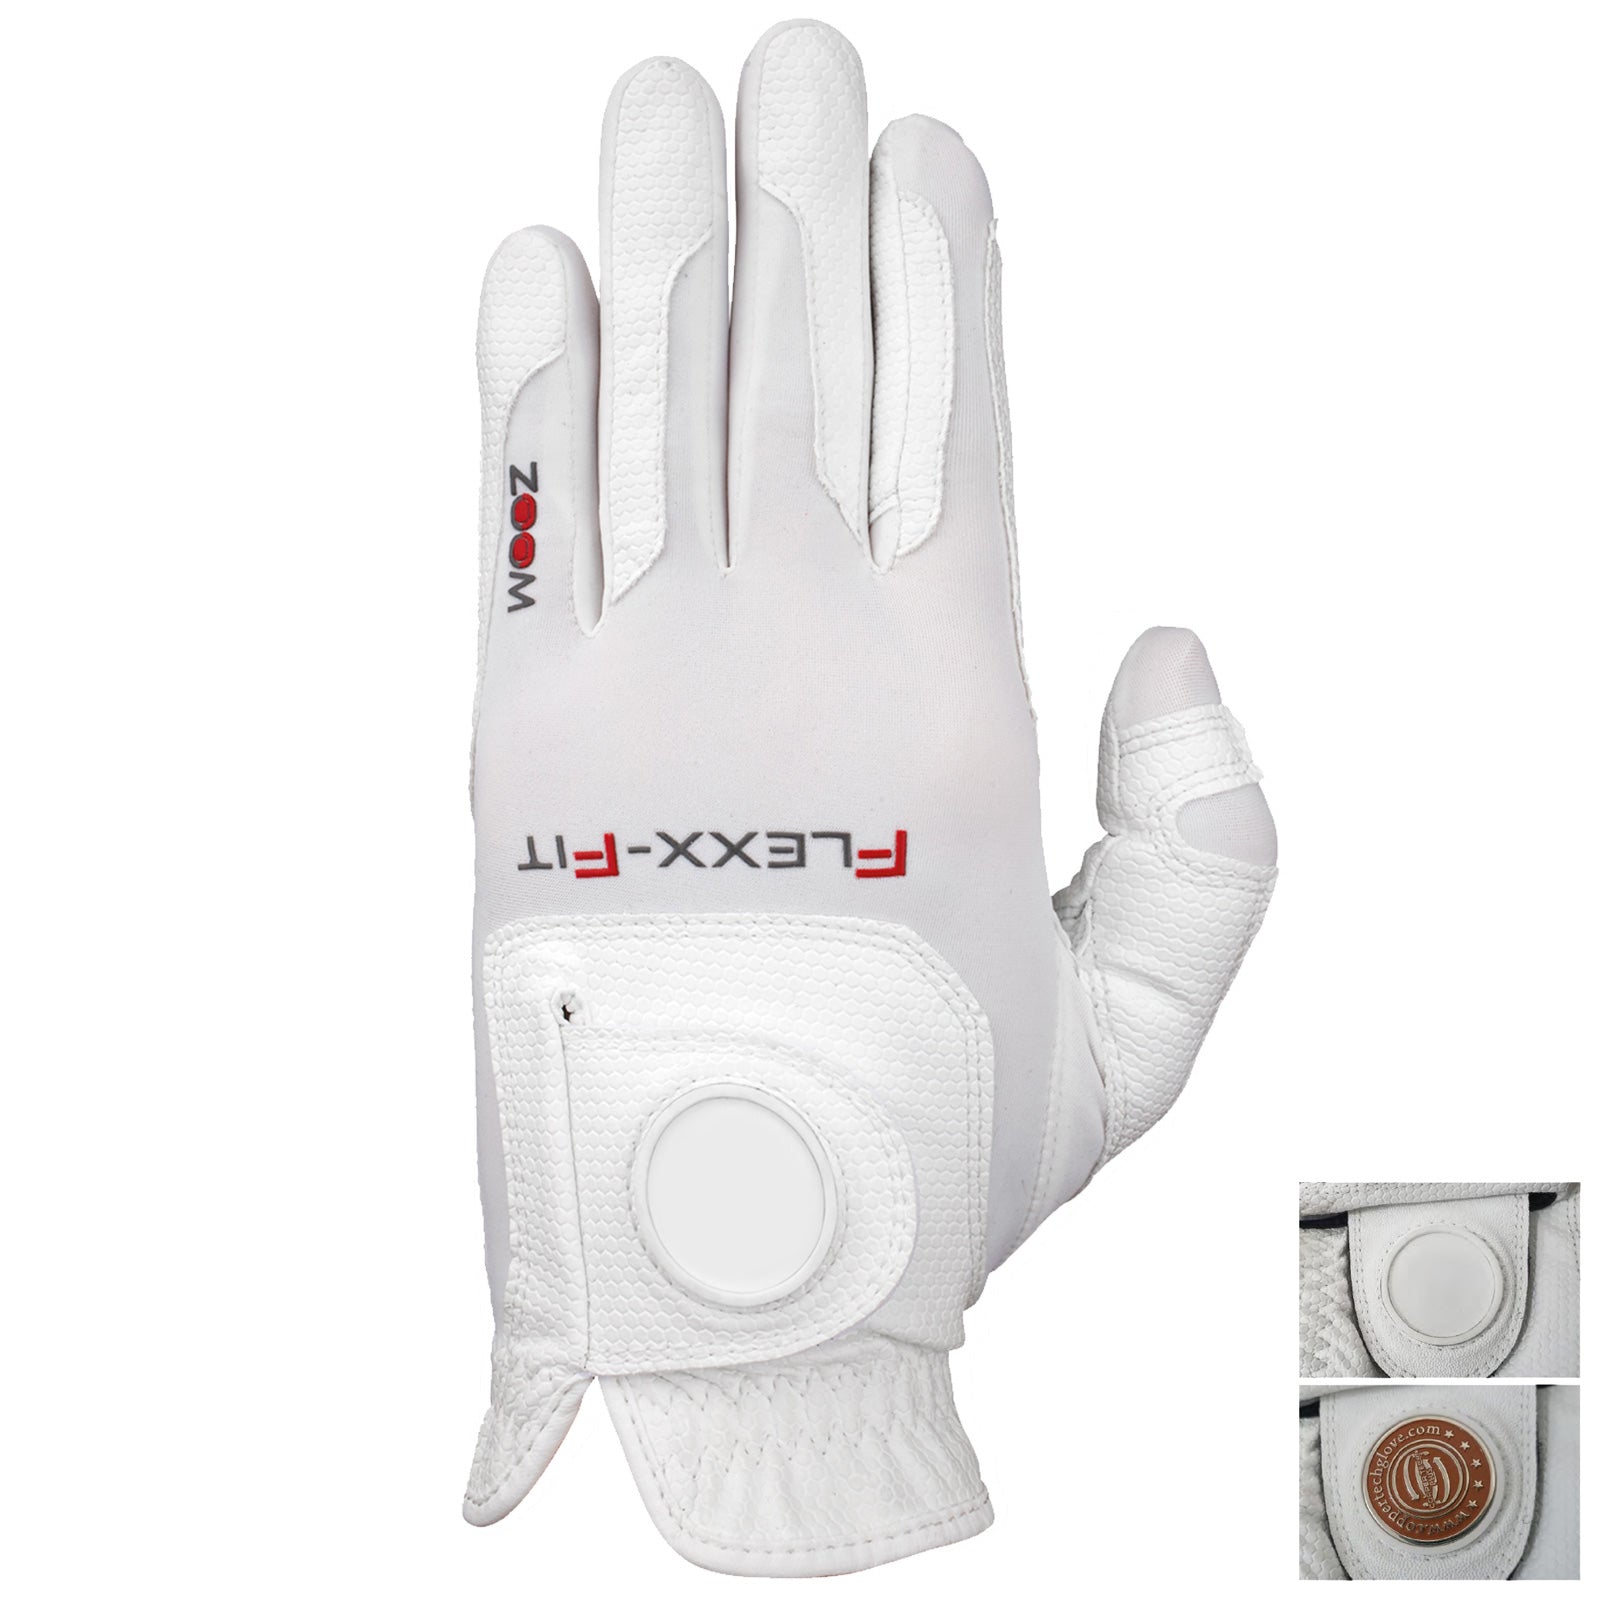 Zoom Mens Left Hand Flexx Fit WEATHER Golf Glove - One Size